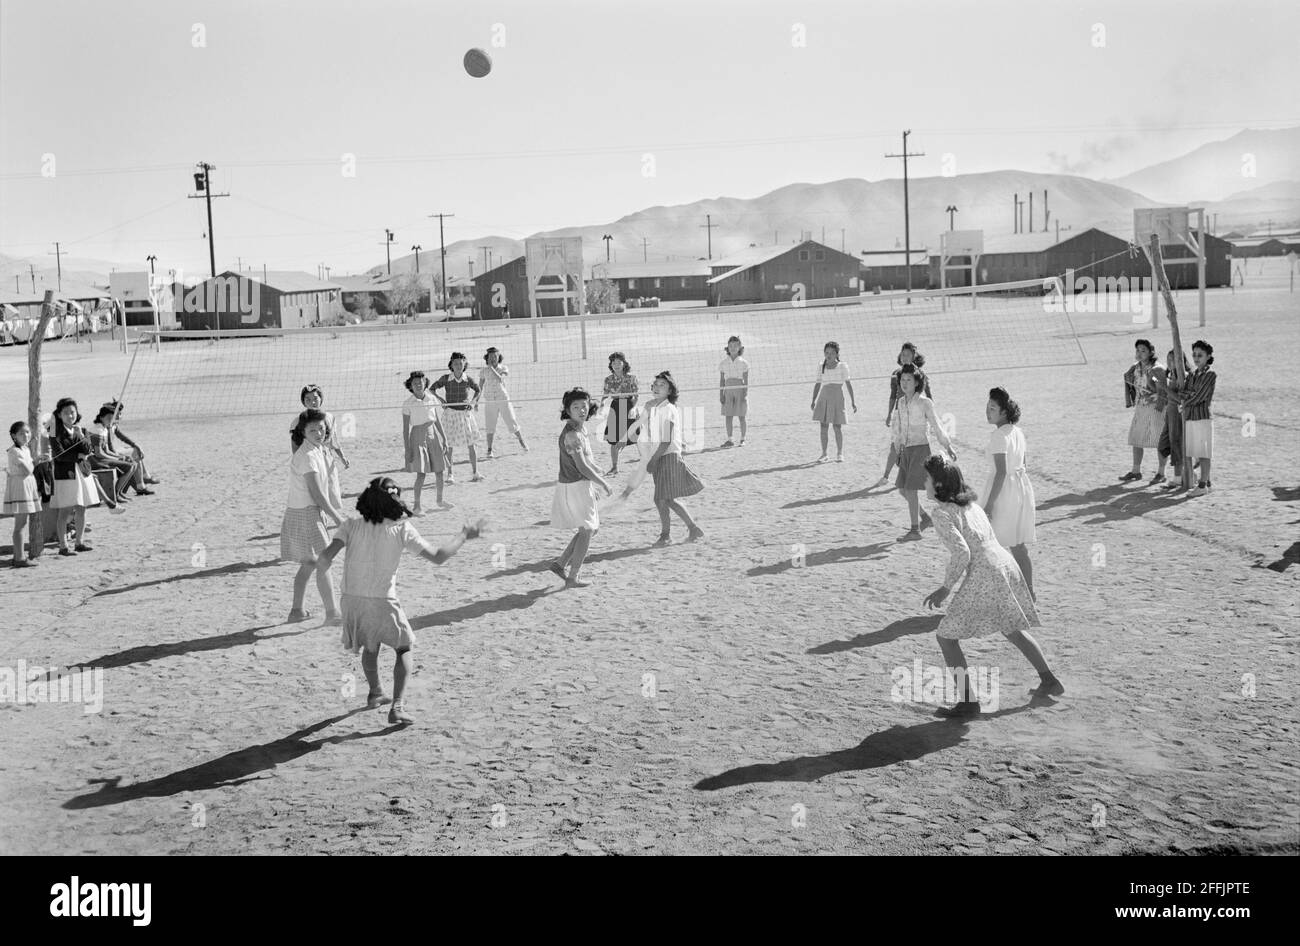 Filles japonaises-américaines jouant au volley-ball, Manzanar Relocation Center, Californie, États-Unis, Ansel Adams, Collection Manzanar War Relocation Centre, 1943 Banque D'Images